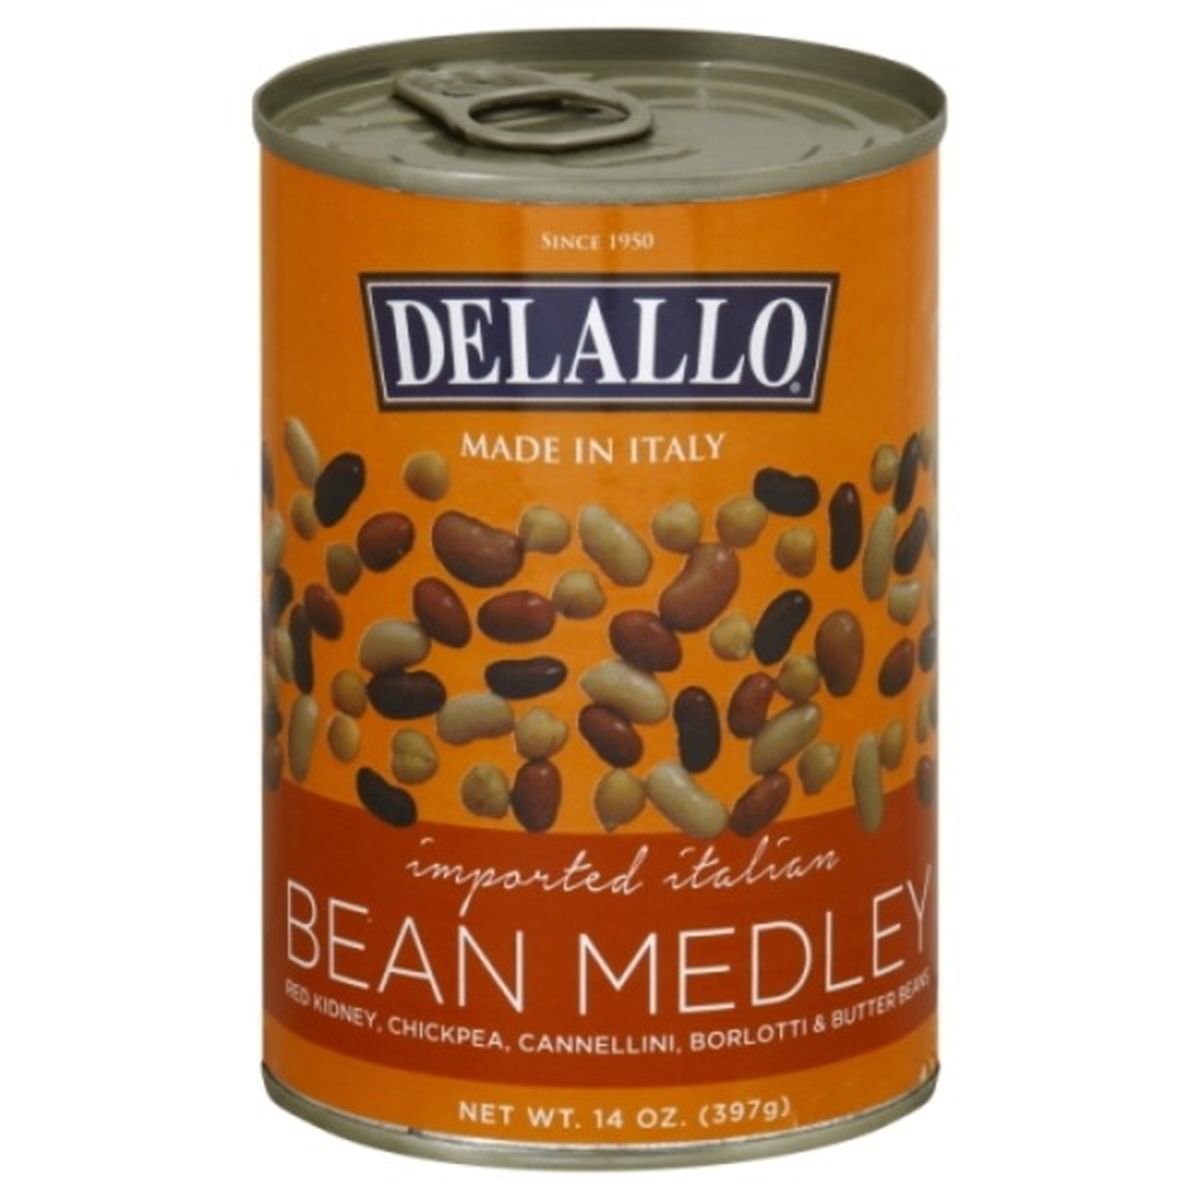 Calories in DeLallo Bean Medley